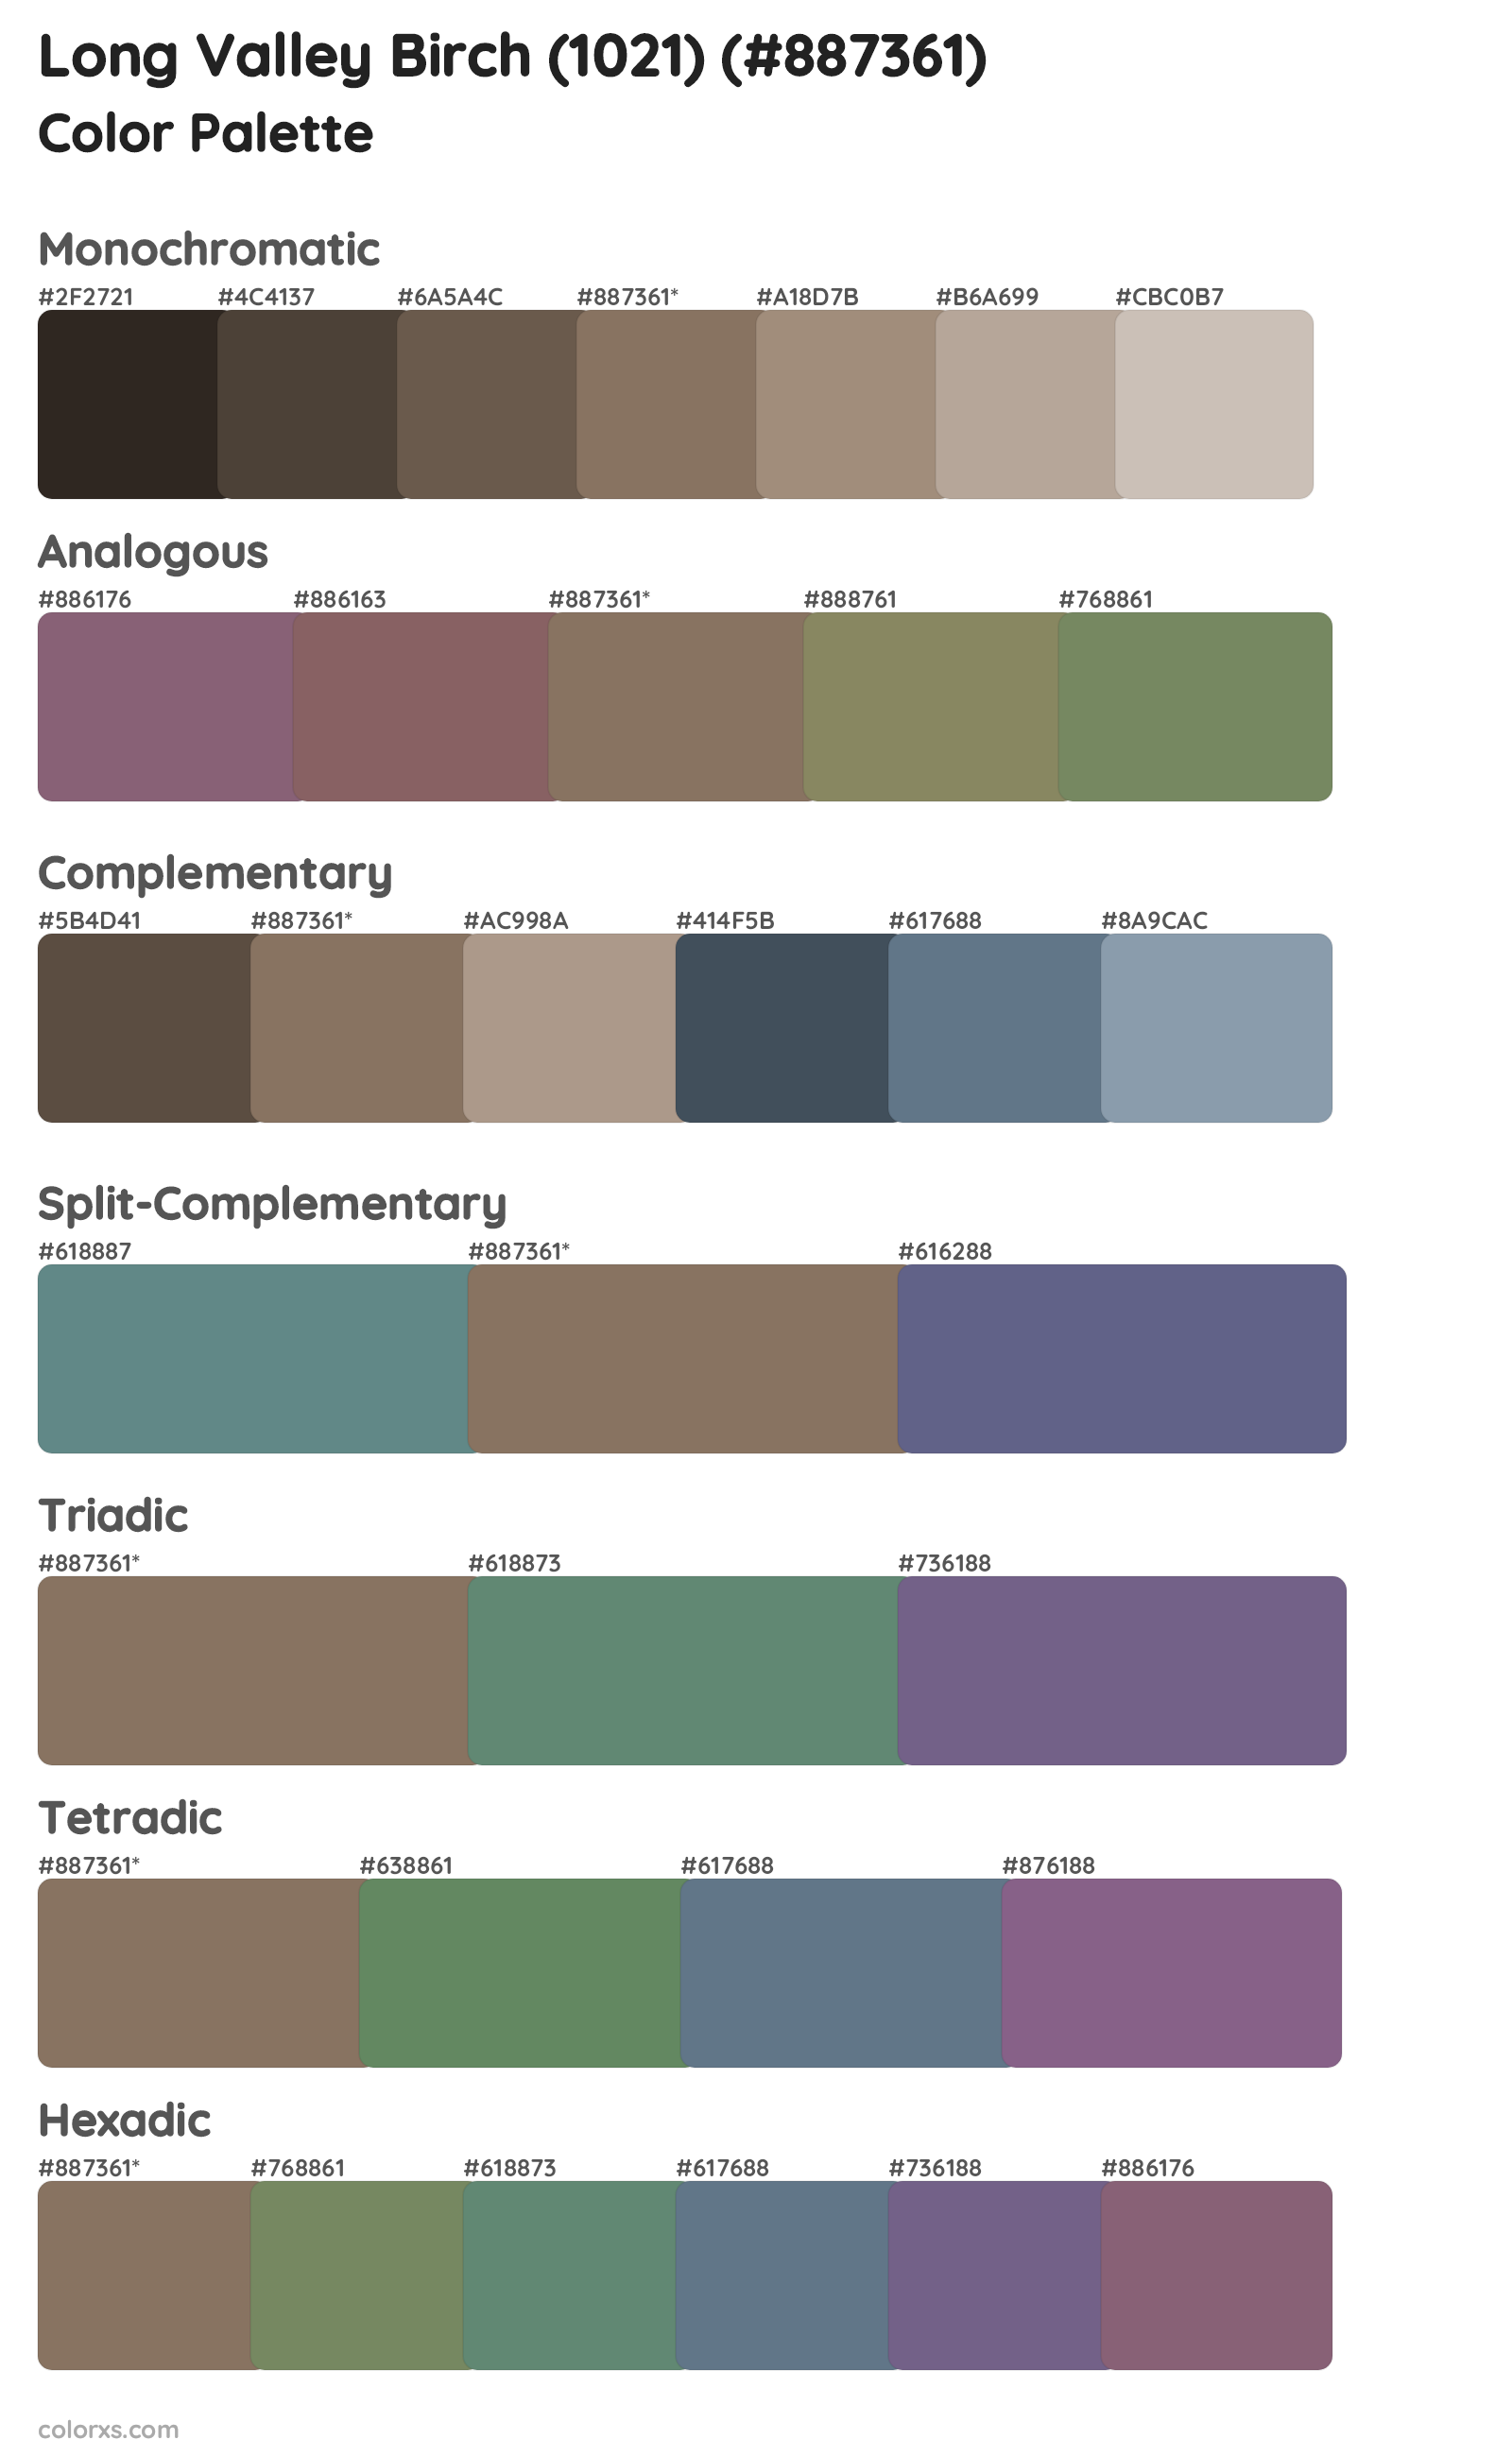 Long Valley Birch (1021) Color Scheme Palettes